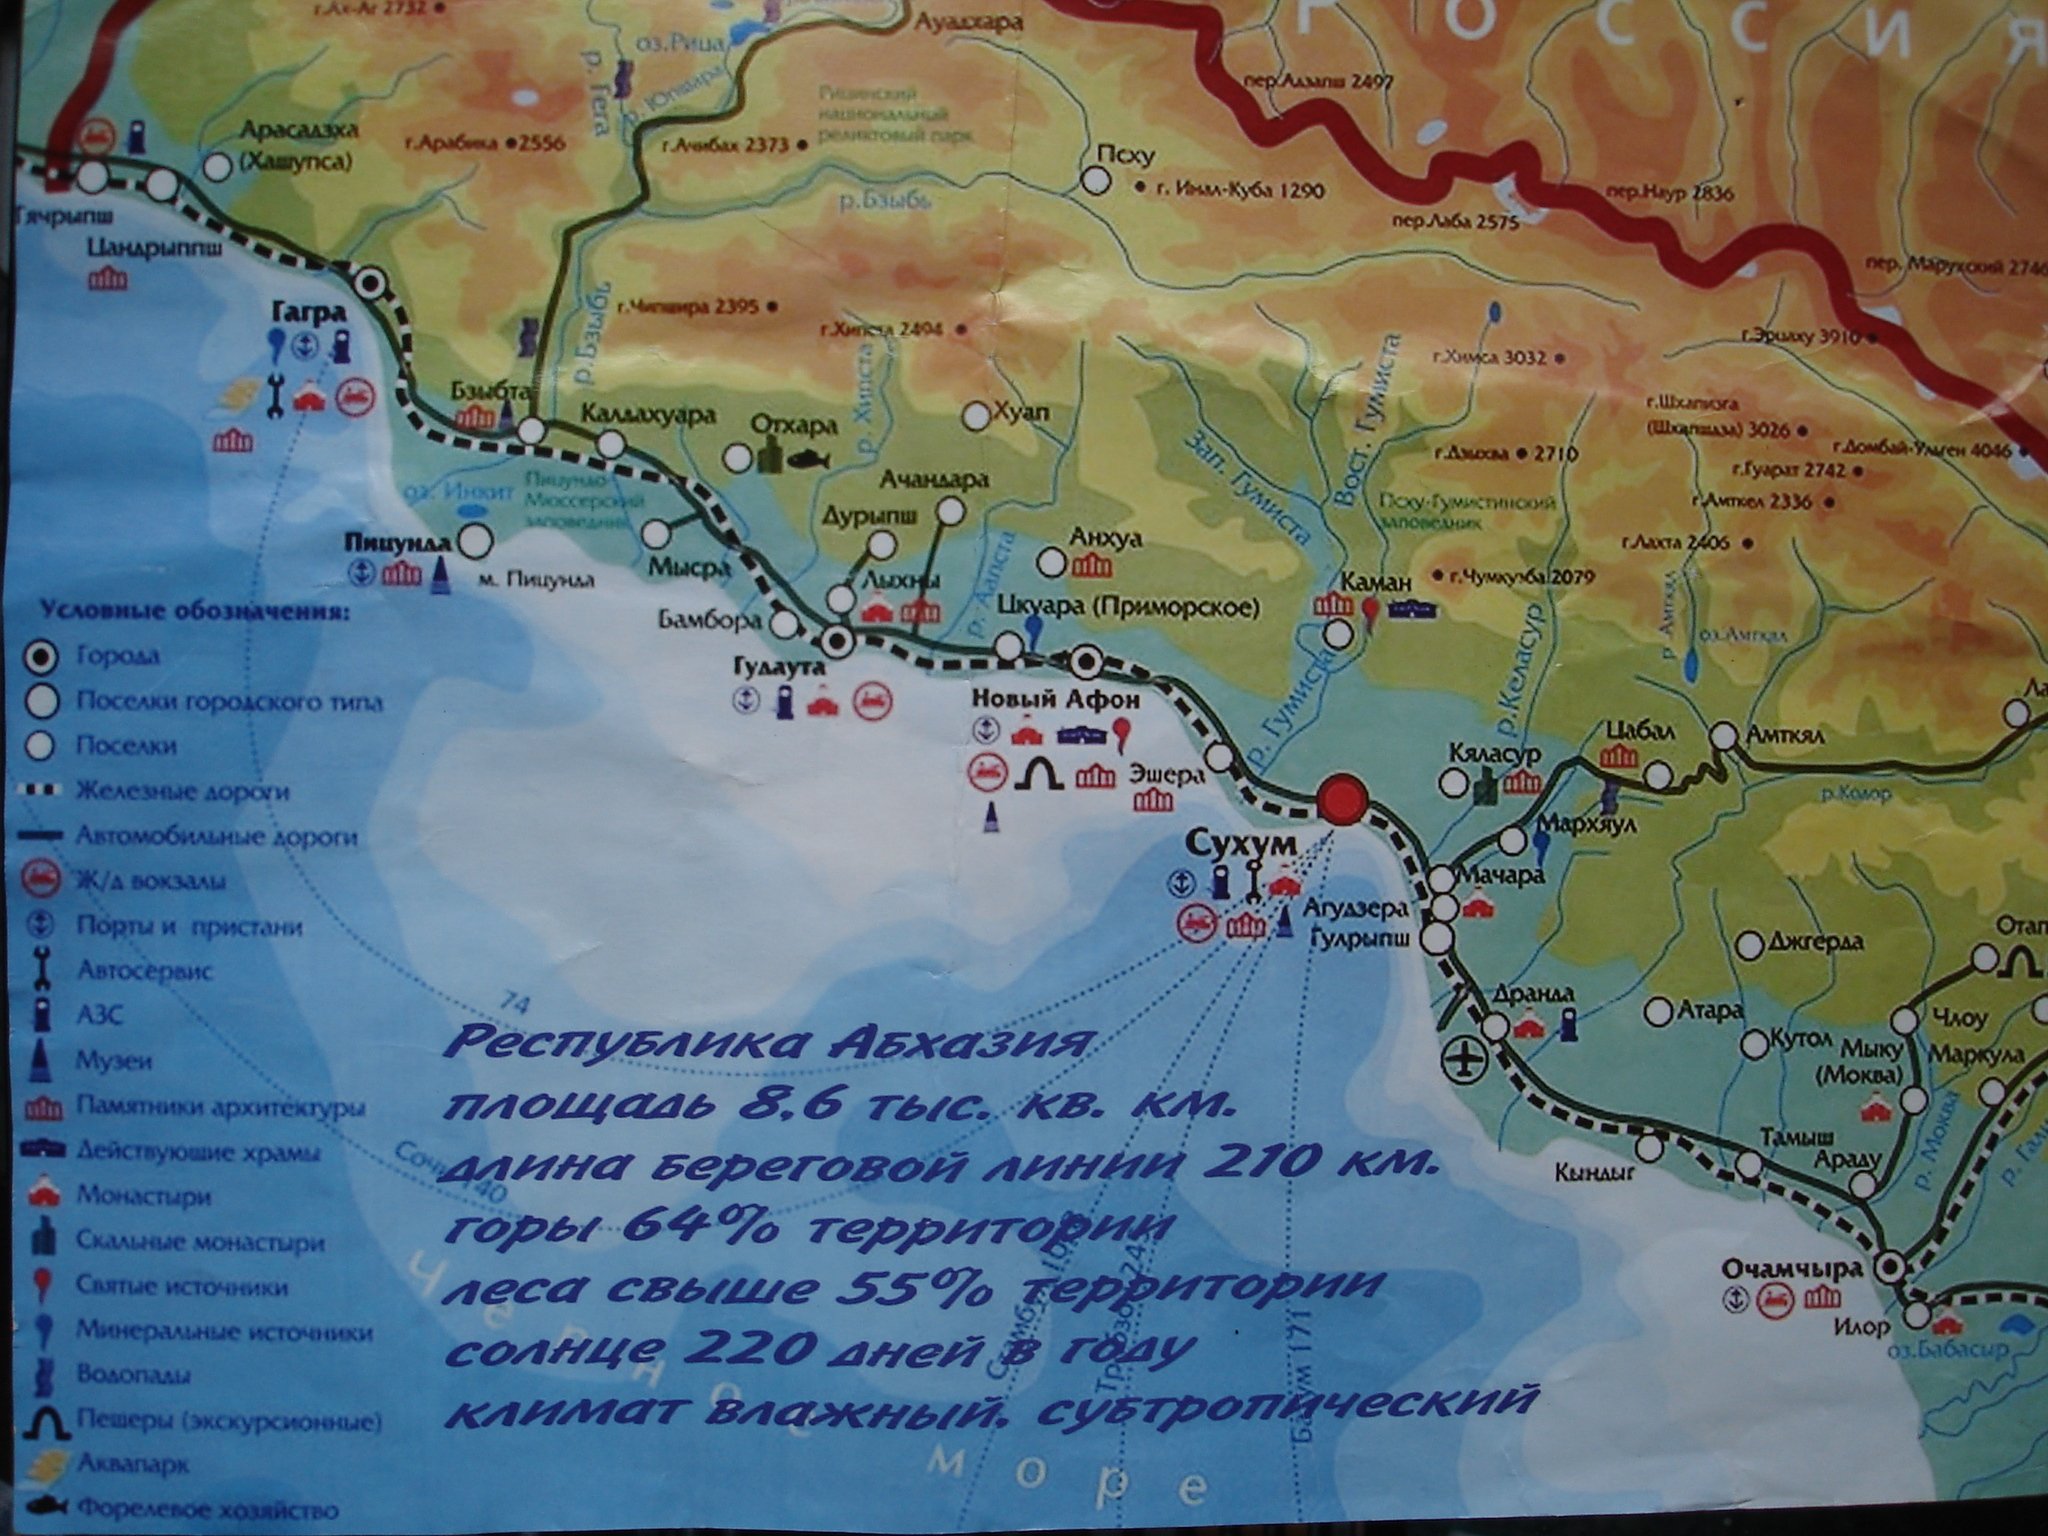 Какие города в абхазии. Карта Абхазии побережье черного. Карта Абхазии с поселками. Карта побережья чёрного моря с городами и поселками Абхазия. Карта Абхазии побережье с поселками.